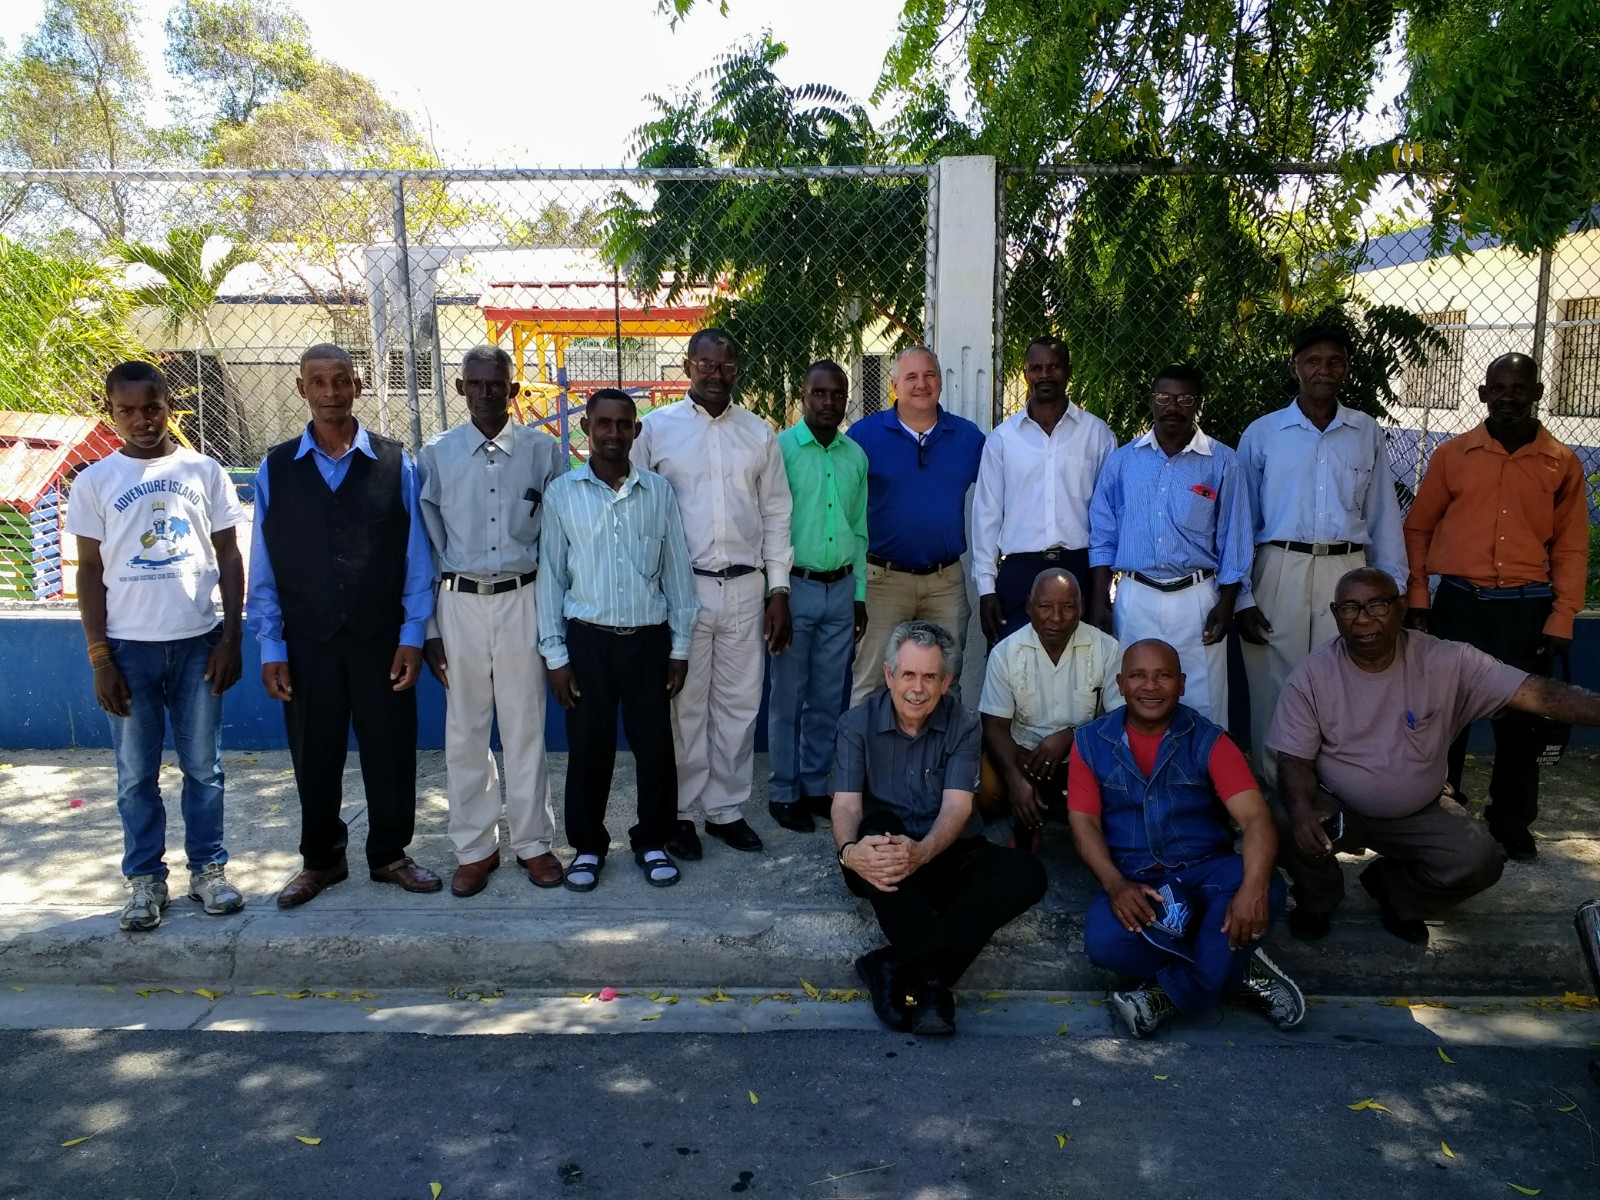 Haitian church leaders